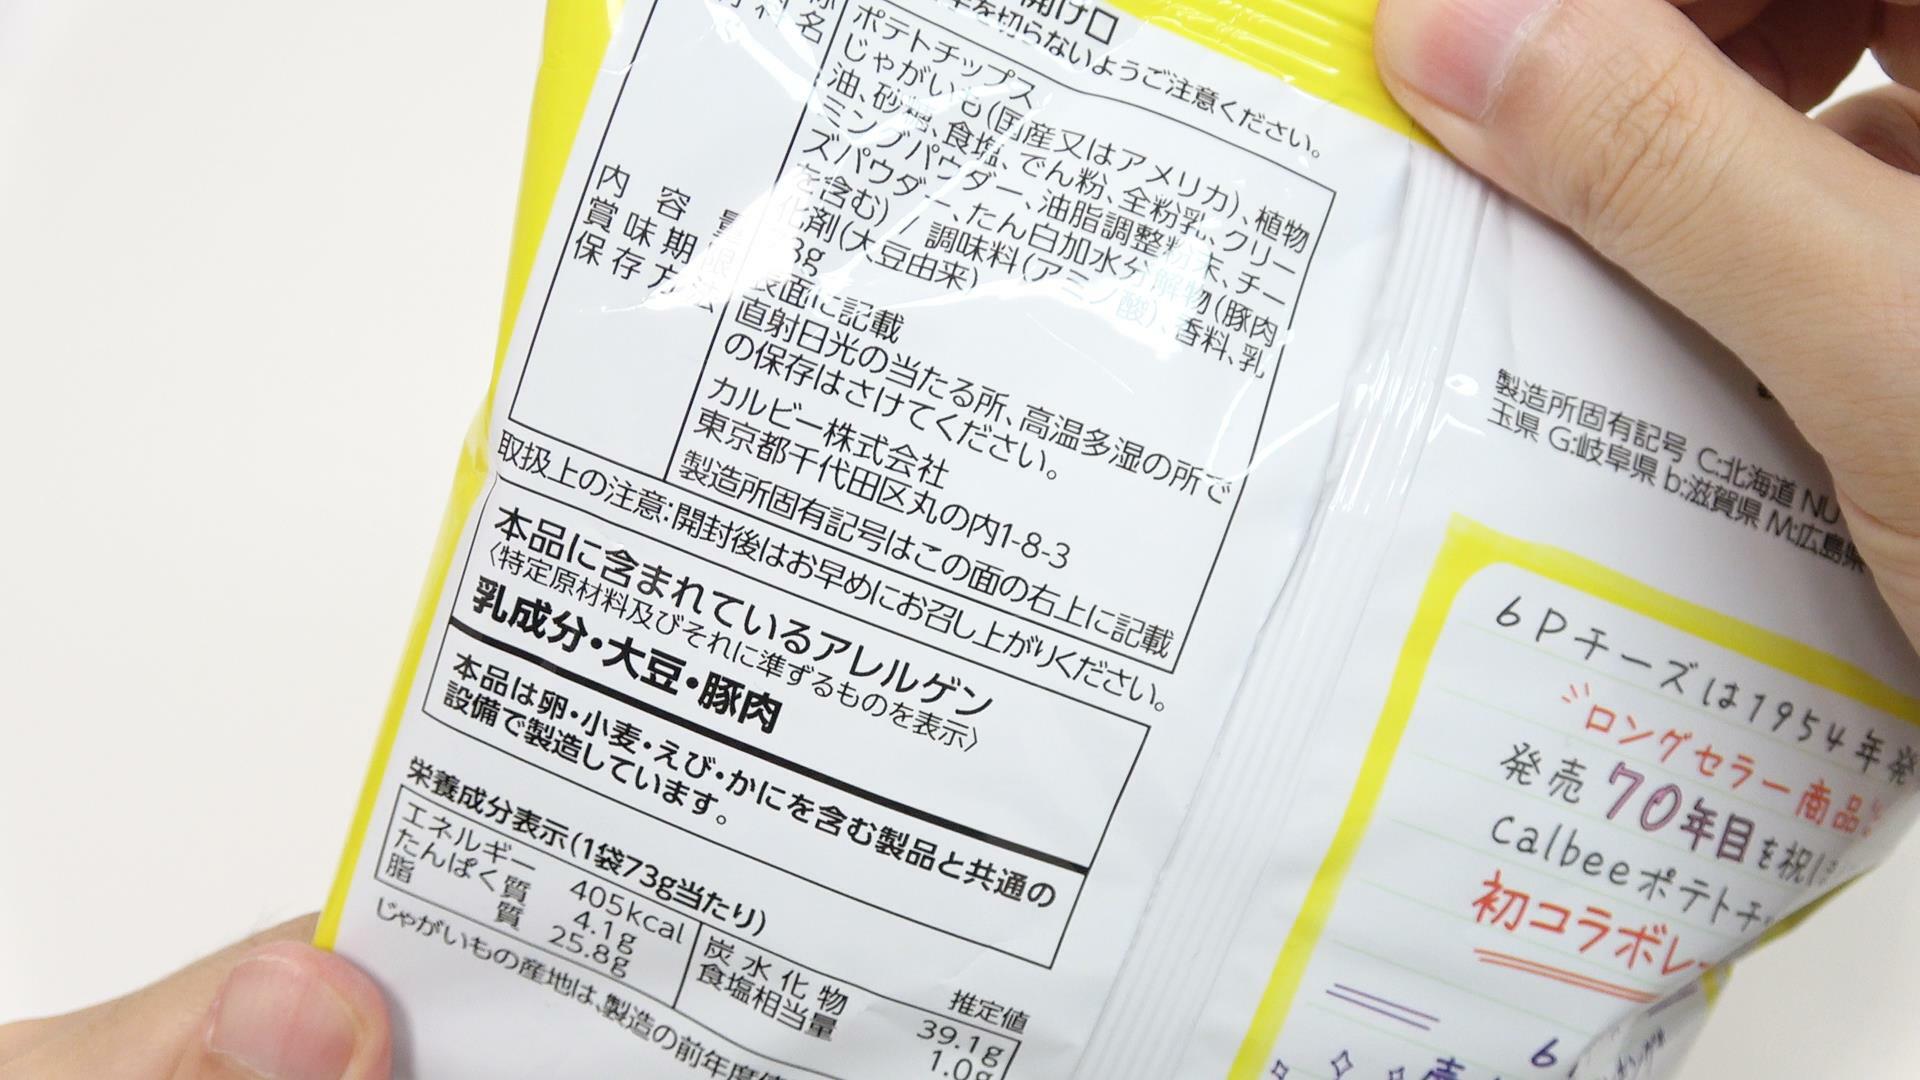 「ポテトチップス６Pチーズ味」原材料名と栄養成分表示